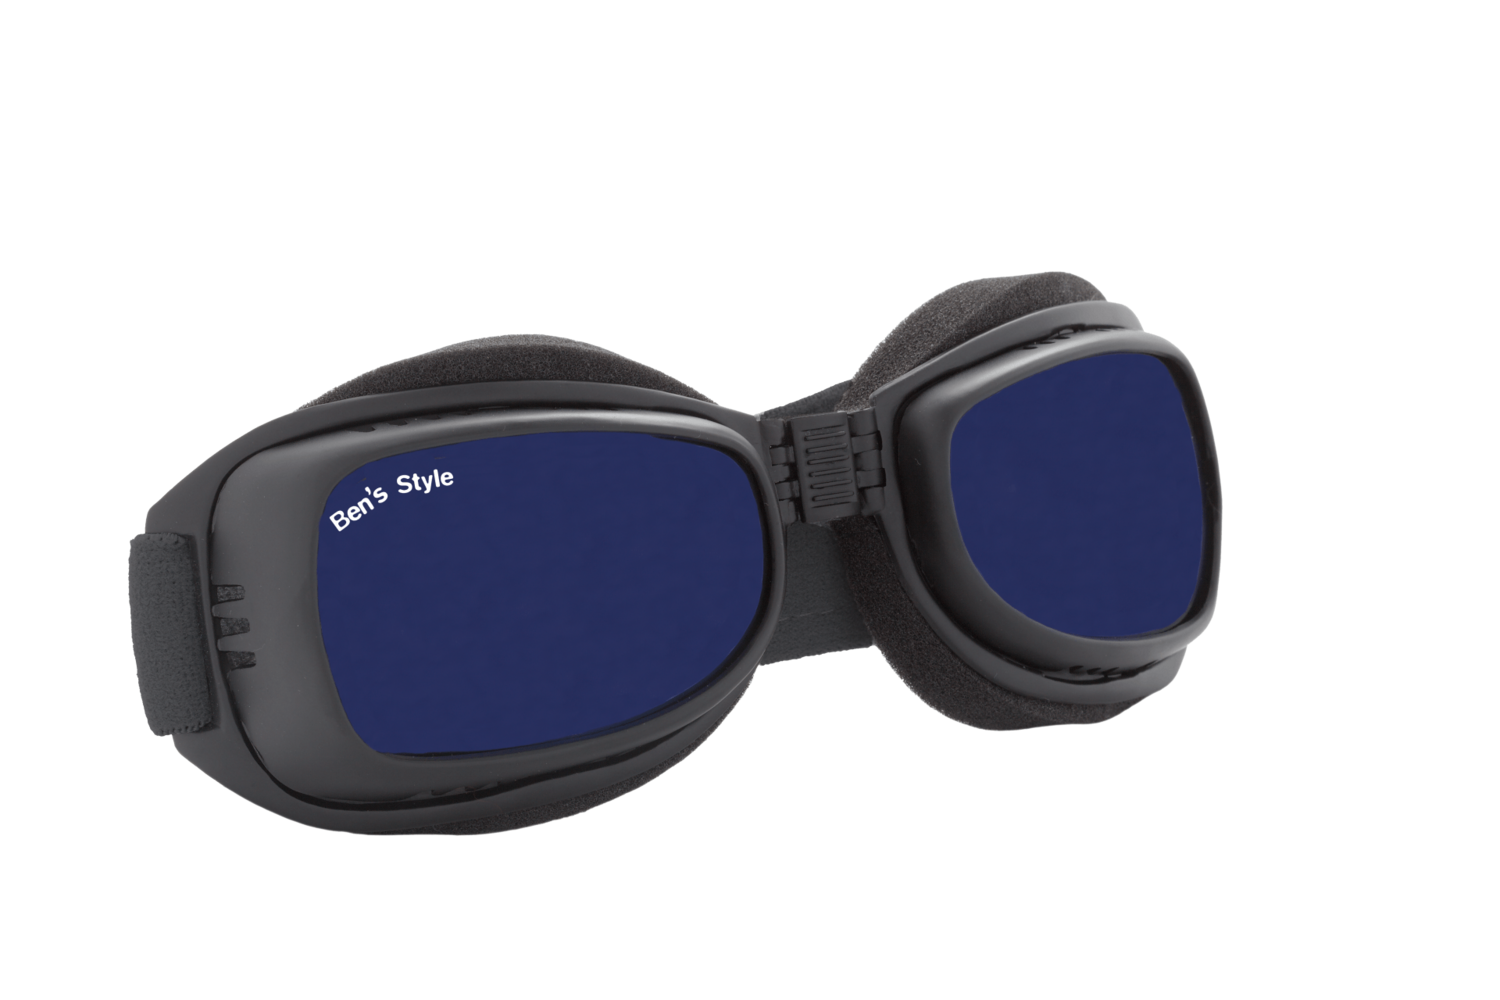 Cool II L -
Hundeschutzbrille Größe L
- Fassung: Schwarz, Gläser: Blau
Größe/Gesamtgewicht: Länge: 20 cm, Breite: 5,5 cm / 64 g